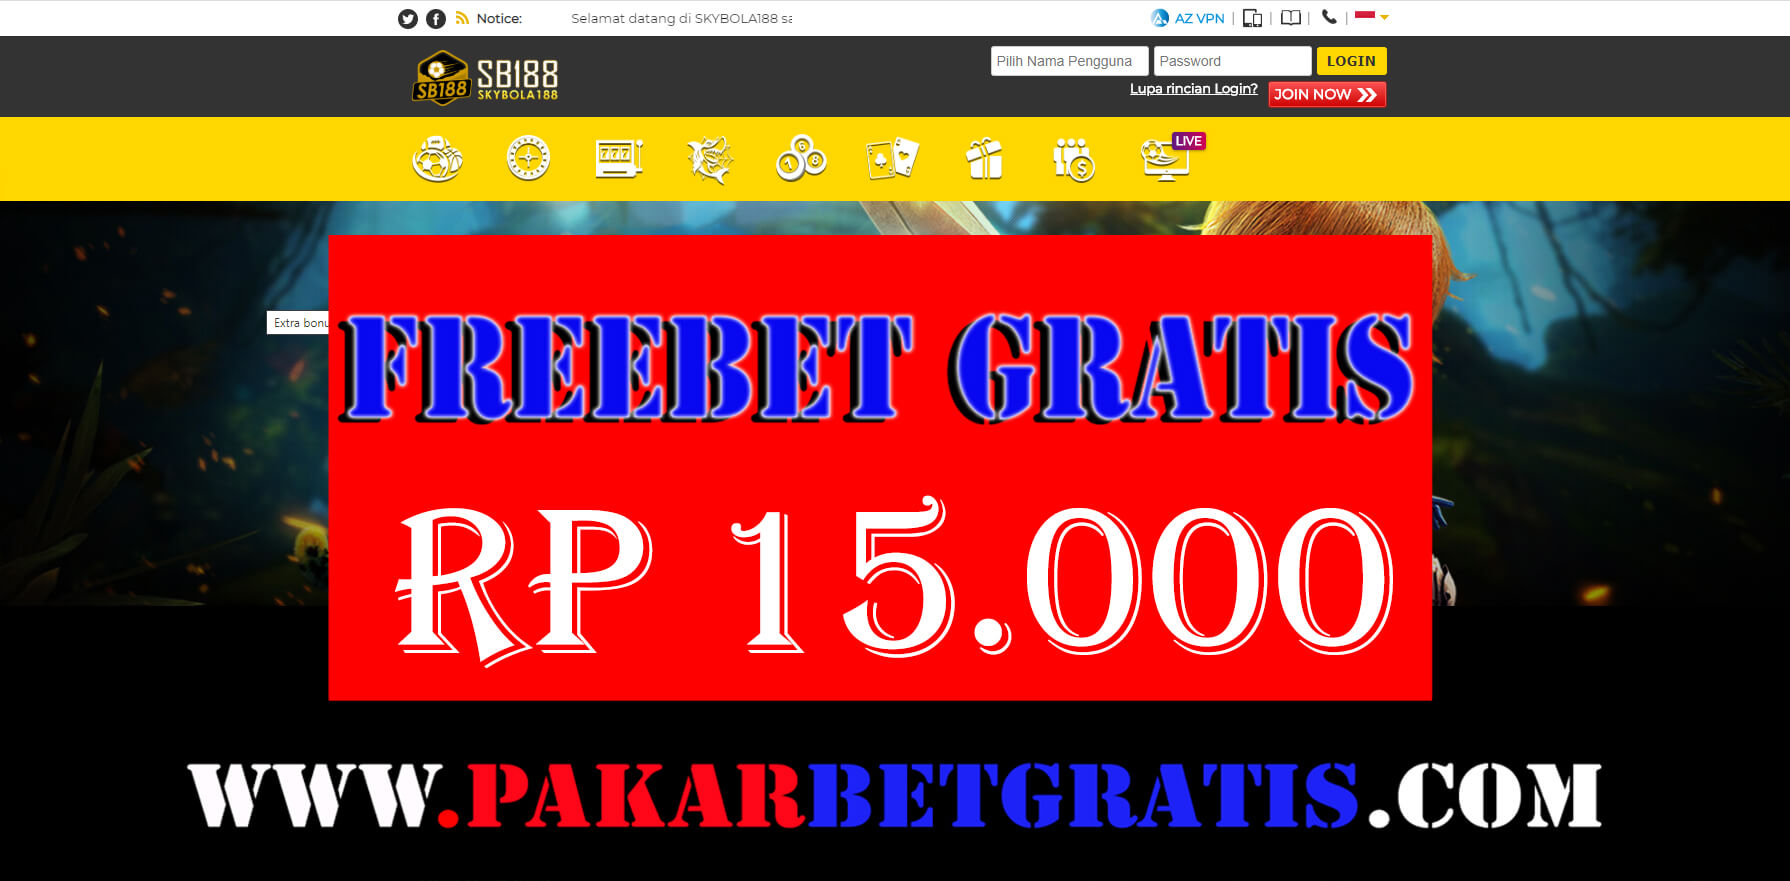 Freebet Gratis skybola188 Rp 15.000 Tanpa deposit